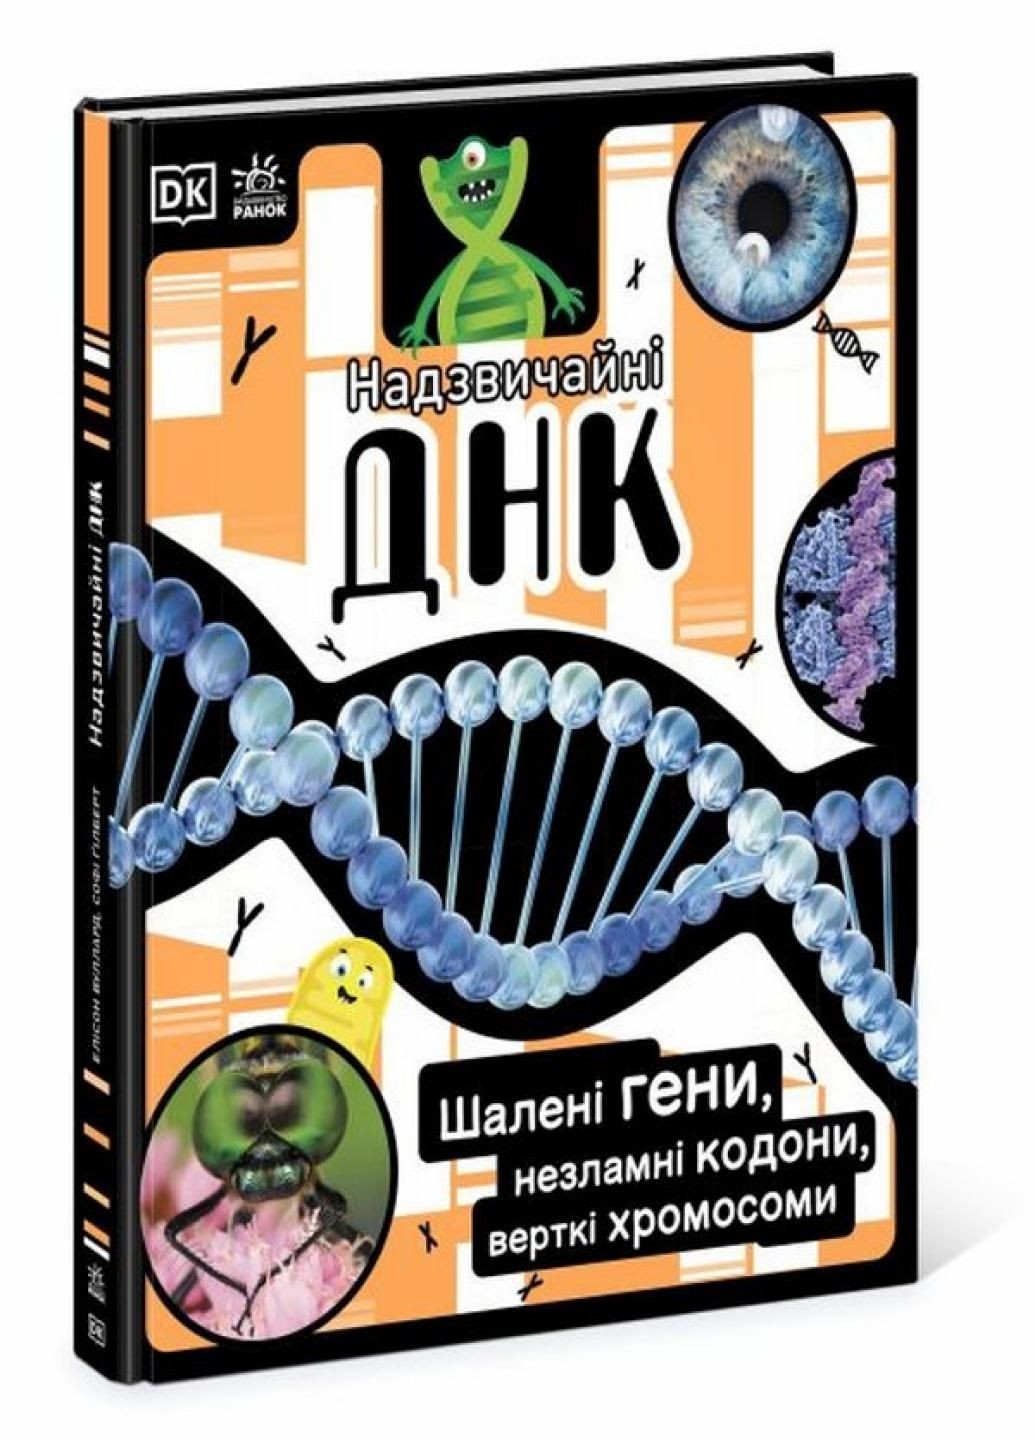 Книга Чрезвычайные ДНК. Безумные гены, несгибаемые кодоны, верткие хромосомы НШ. НЕ1434022У 9780241618226 РАНОК (292549989)